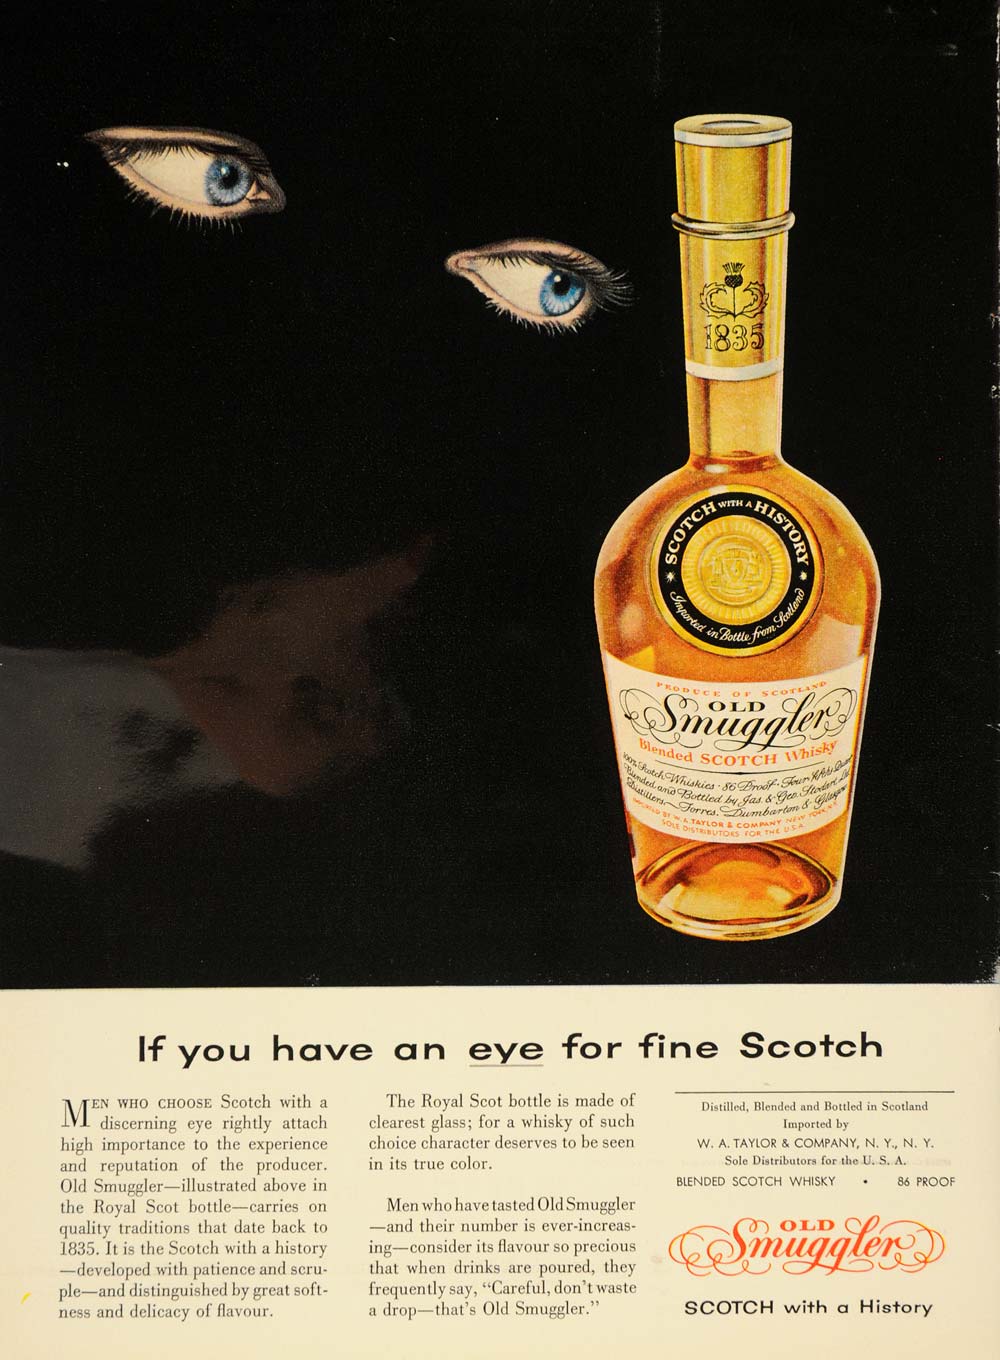 1955 Ad Old Smuggler Scotch Whisky Alcohol Beverage - ORIGINAL ADVERTISING TM5